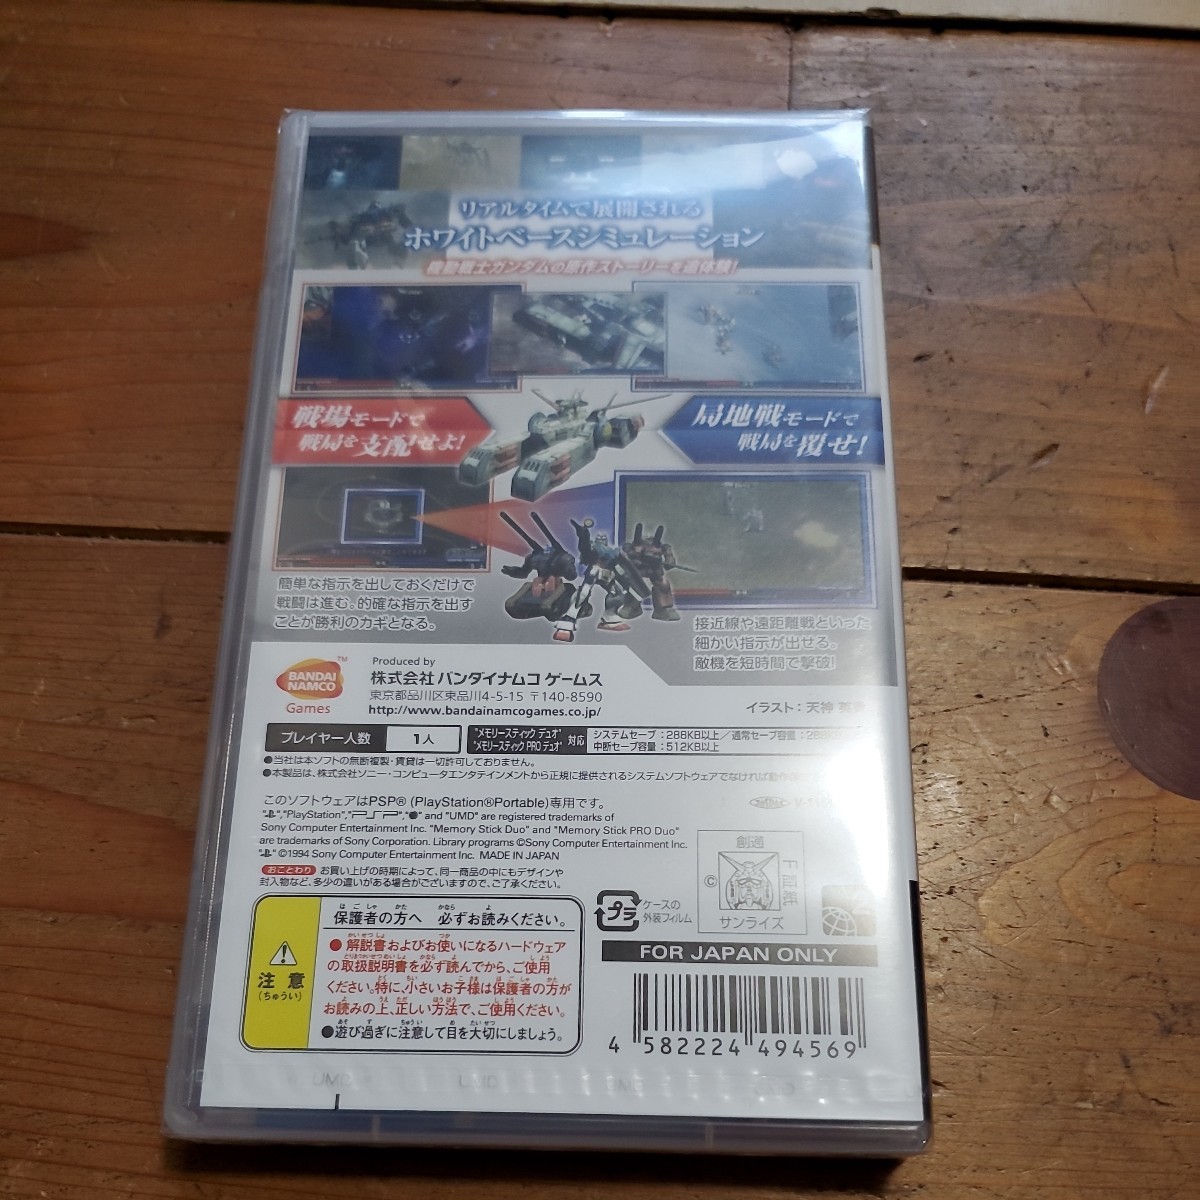 PSP новый товар нераспечатанный Mobile Suit Gundam деревянная лошадь. траектория покупка дополнительный подарок 